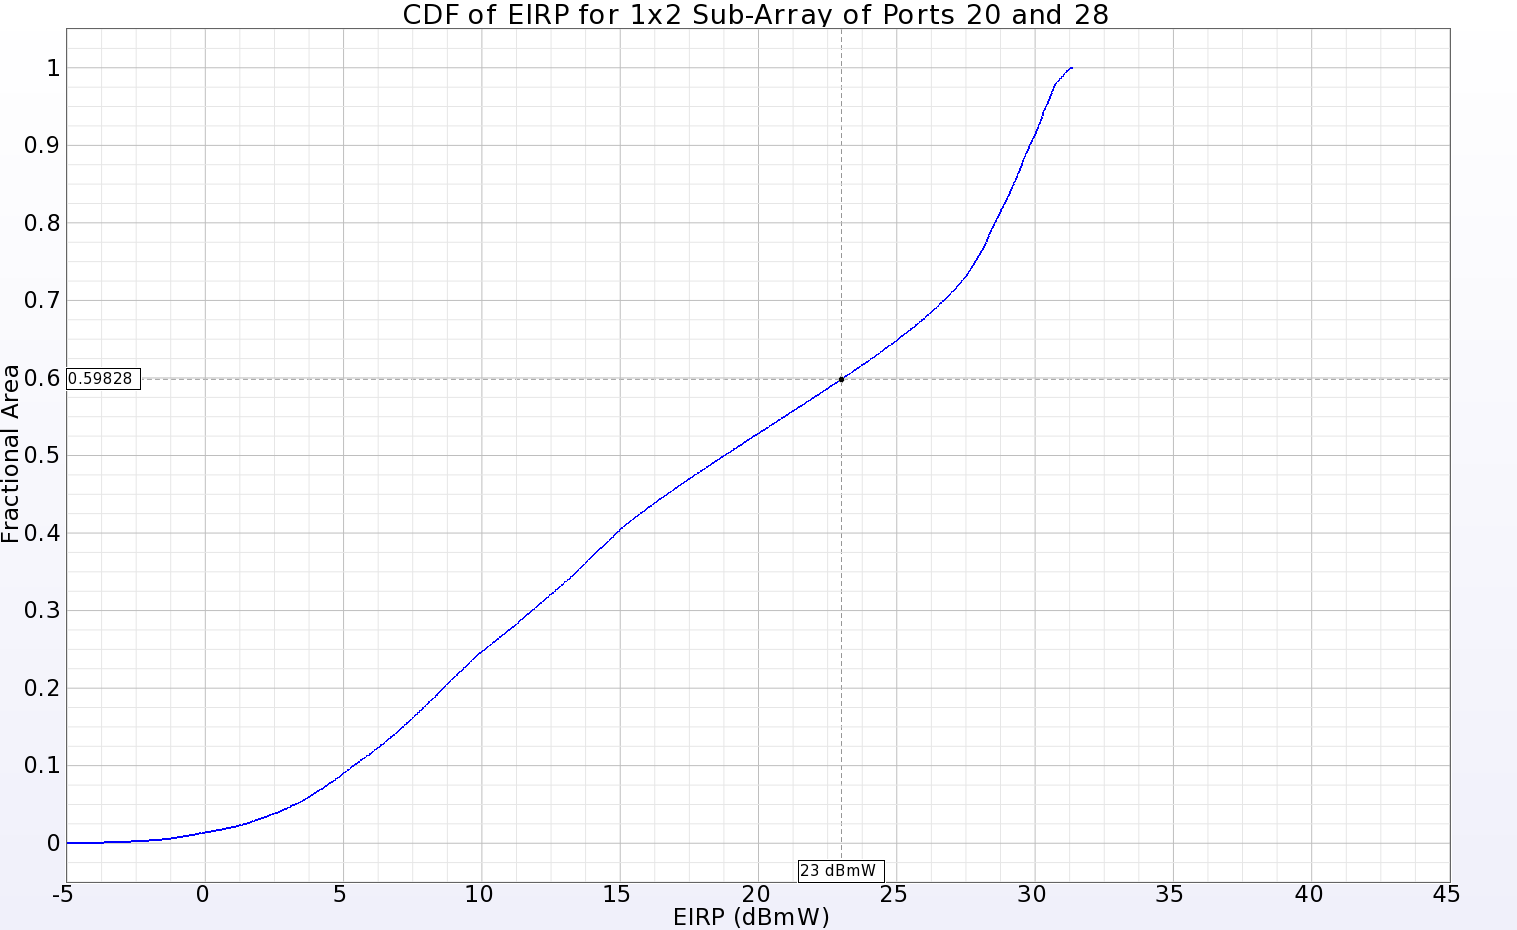 Abbildung 14: Die CDF des EIRP-Plots für ein 1x2-Sub-Array, das sich in der Nähe der Mitte des Haupt-Arrays befindet, zeigt eine positive Verstärkung über 40,2 % der Fernzone für eine Eingangsleistung von 23 dBmW.